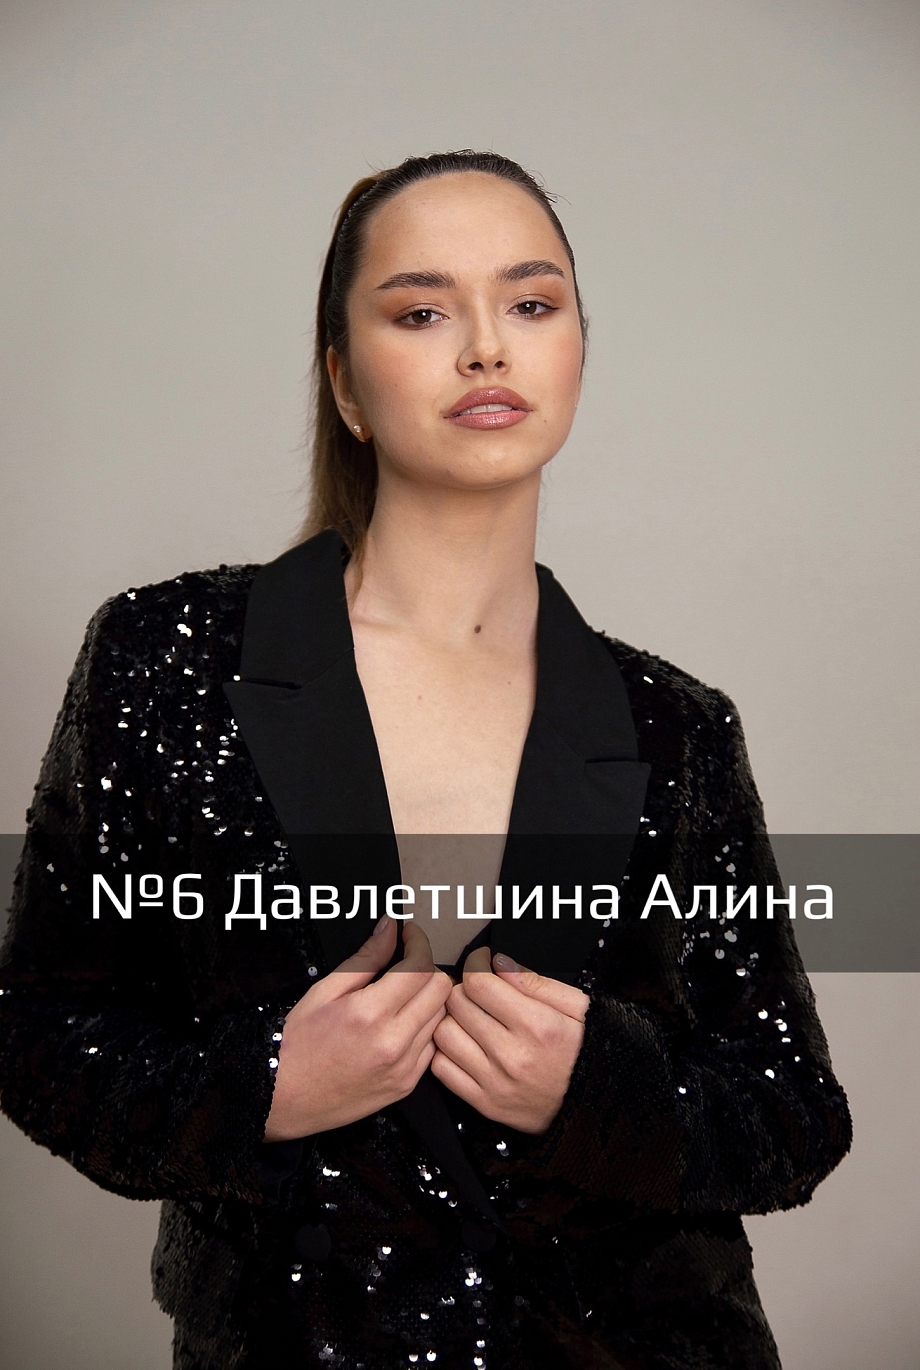 В финал конкурса «Супермодель Татарстана» вышли 17 девушек (фото)